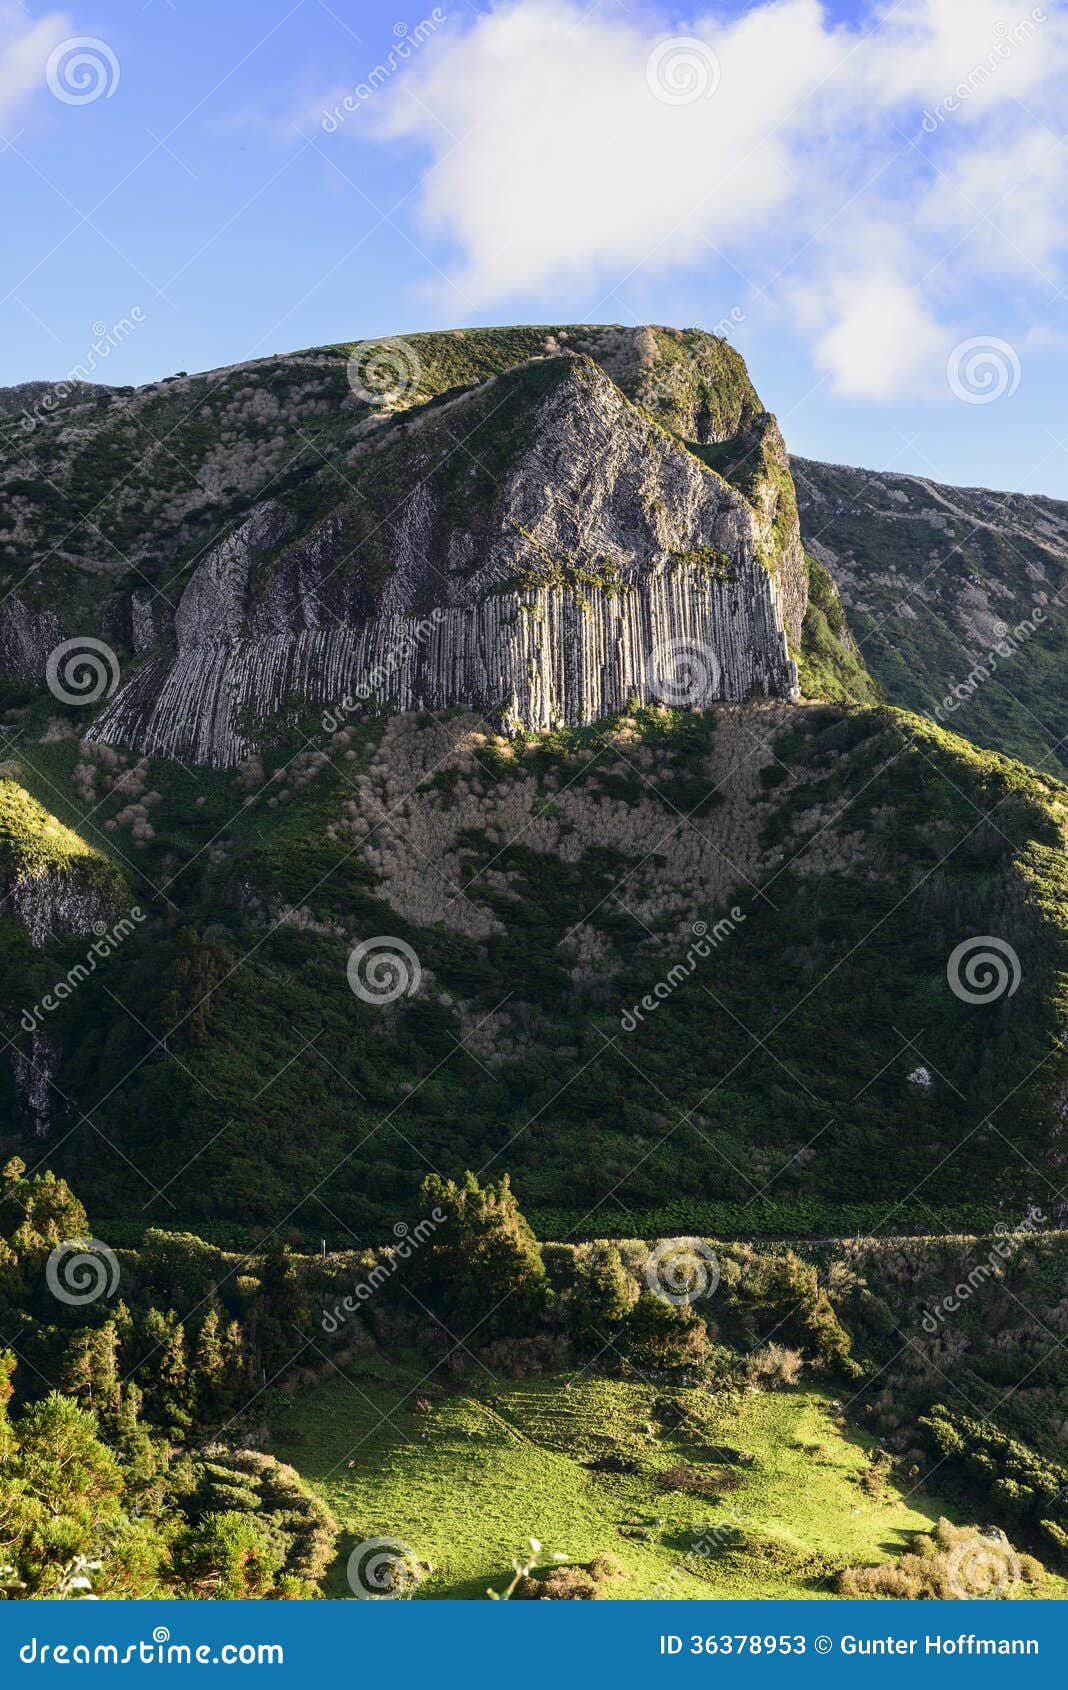 rochas dos bordoes, flores island, azores archipelago (portugal)